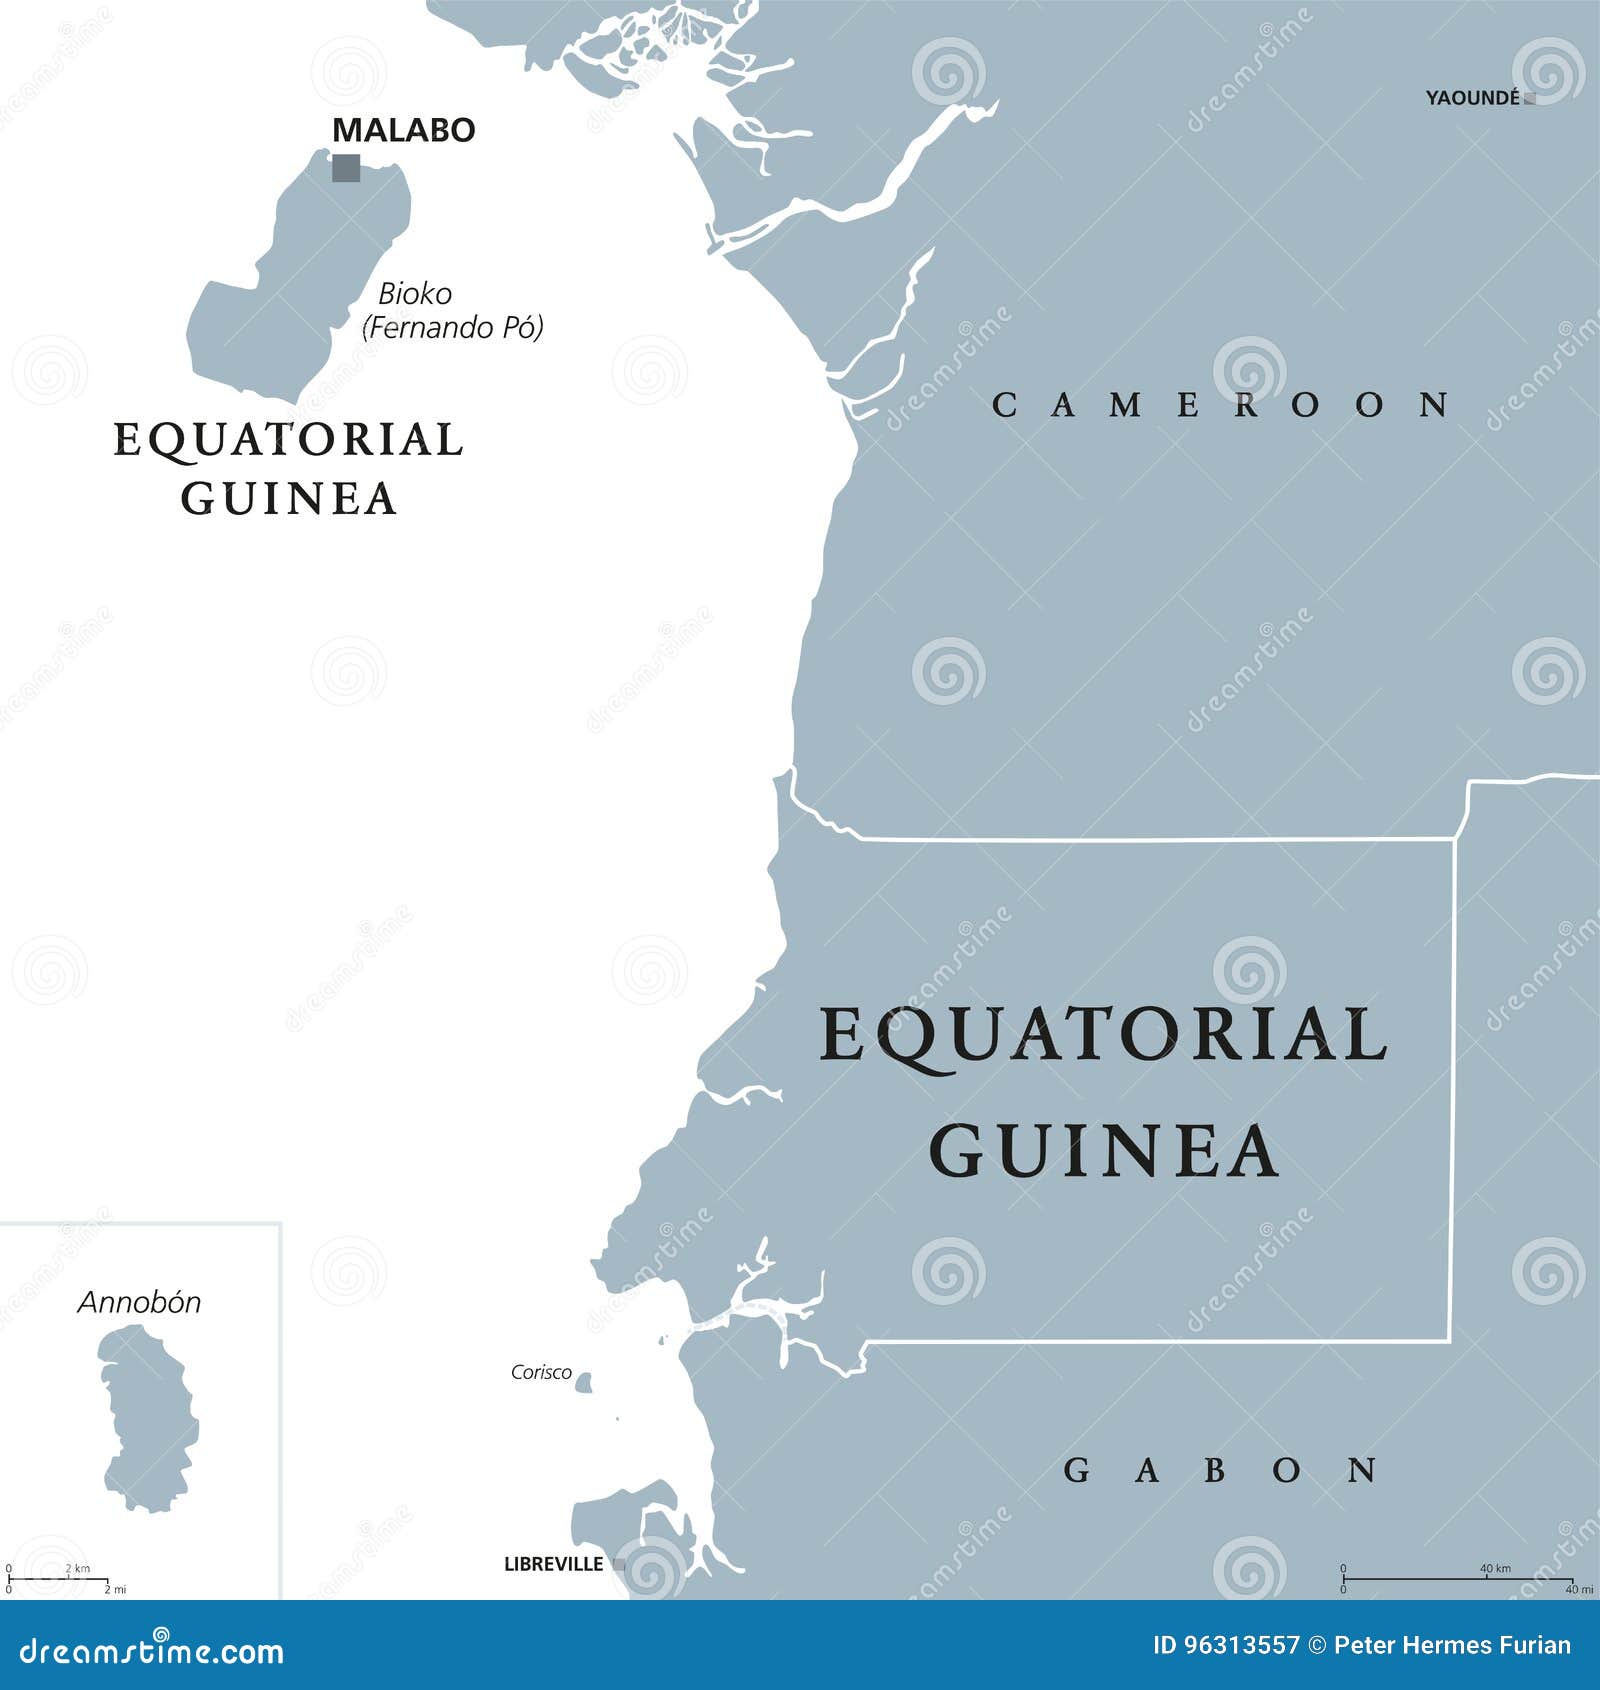 equatorial guinea political map